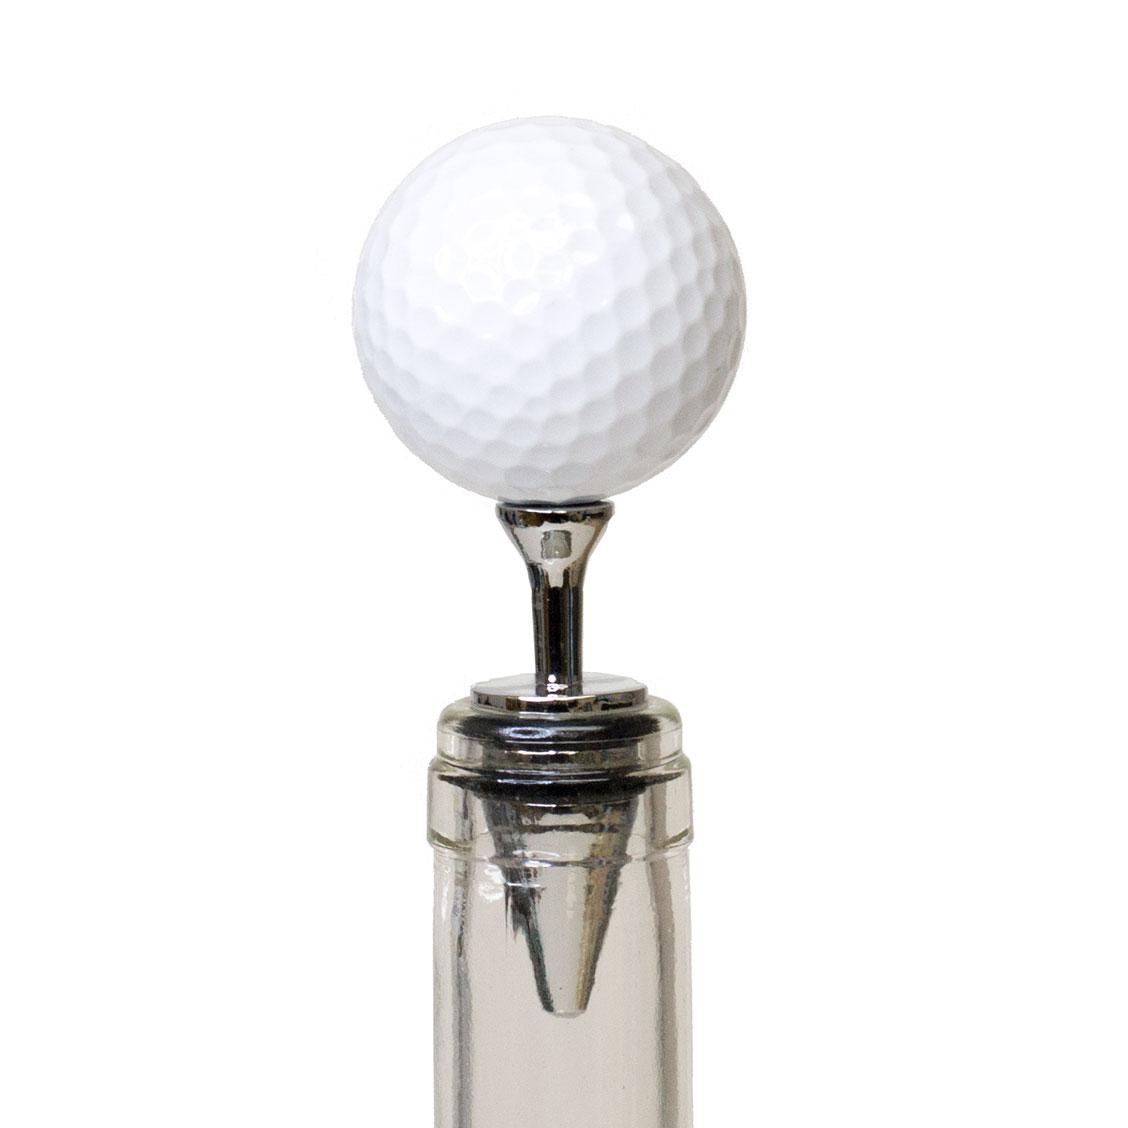 UBERSTAR Golf Ball Wine Bottle Stopper